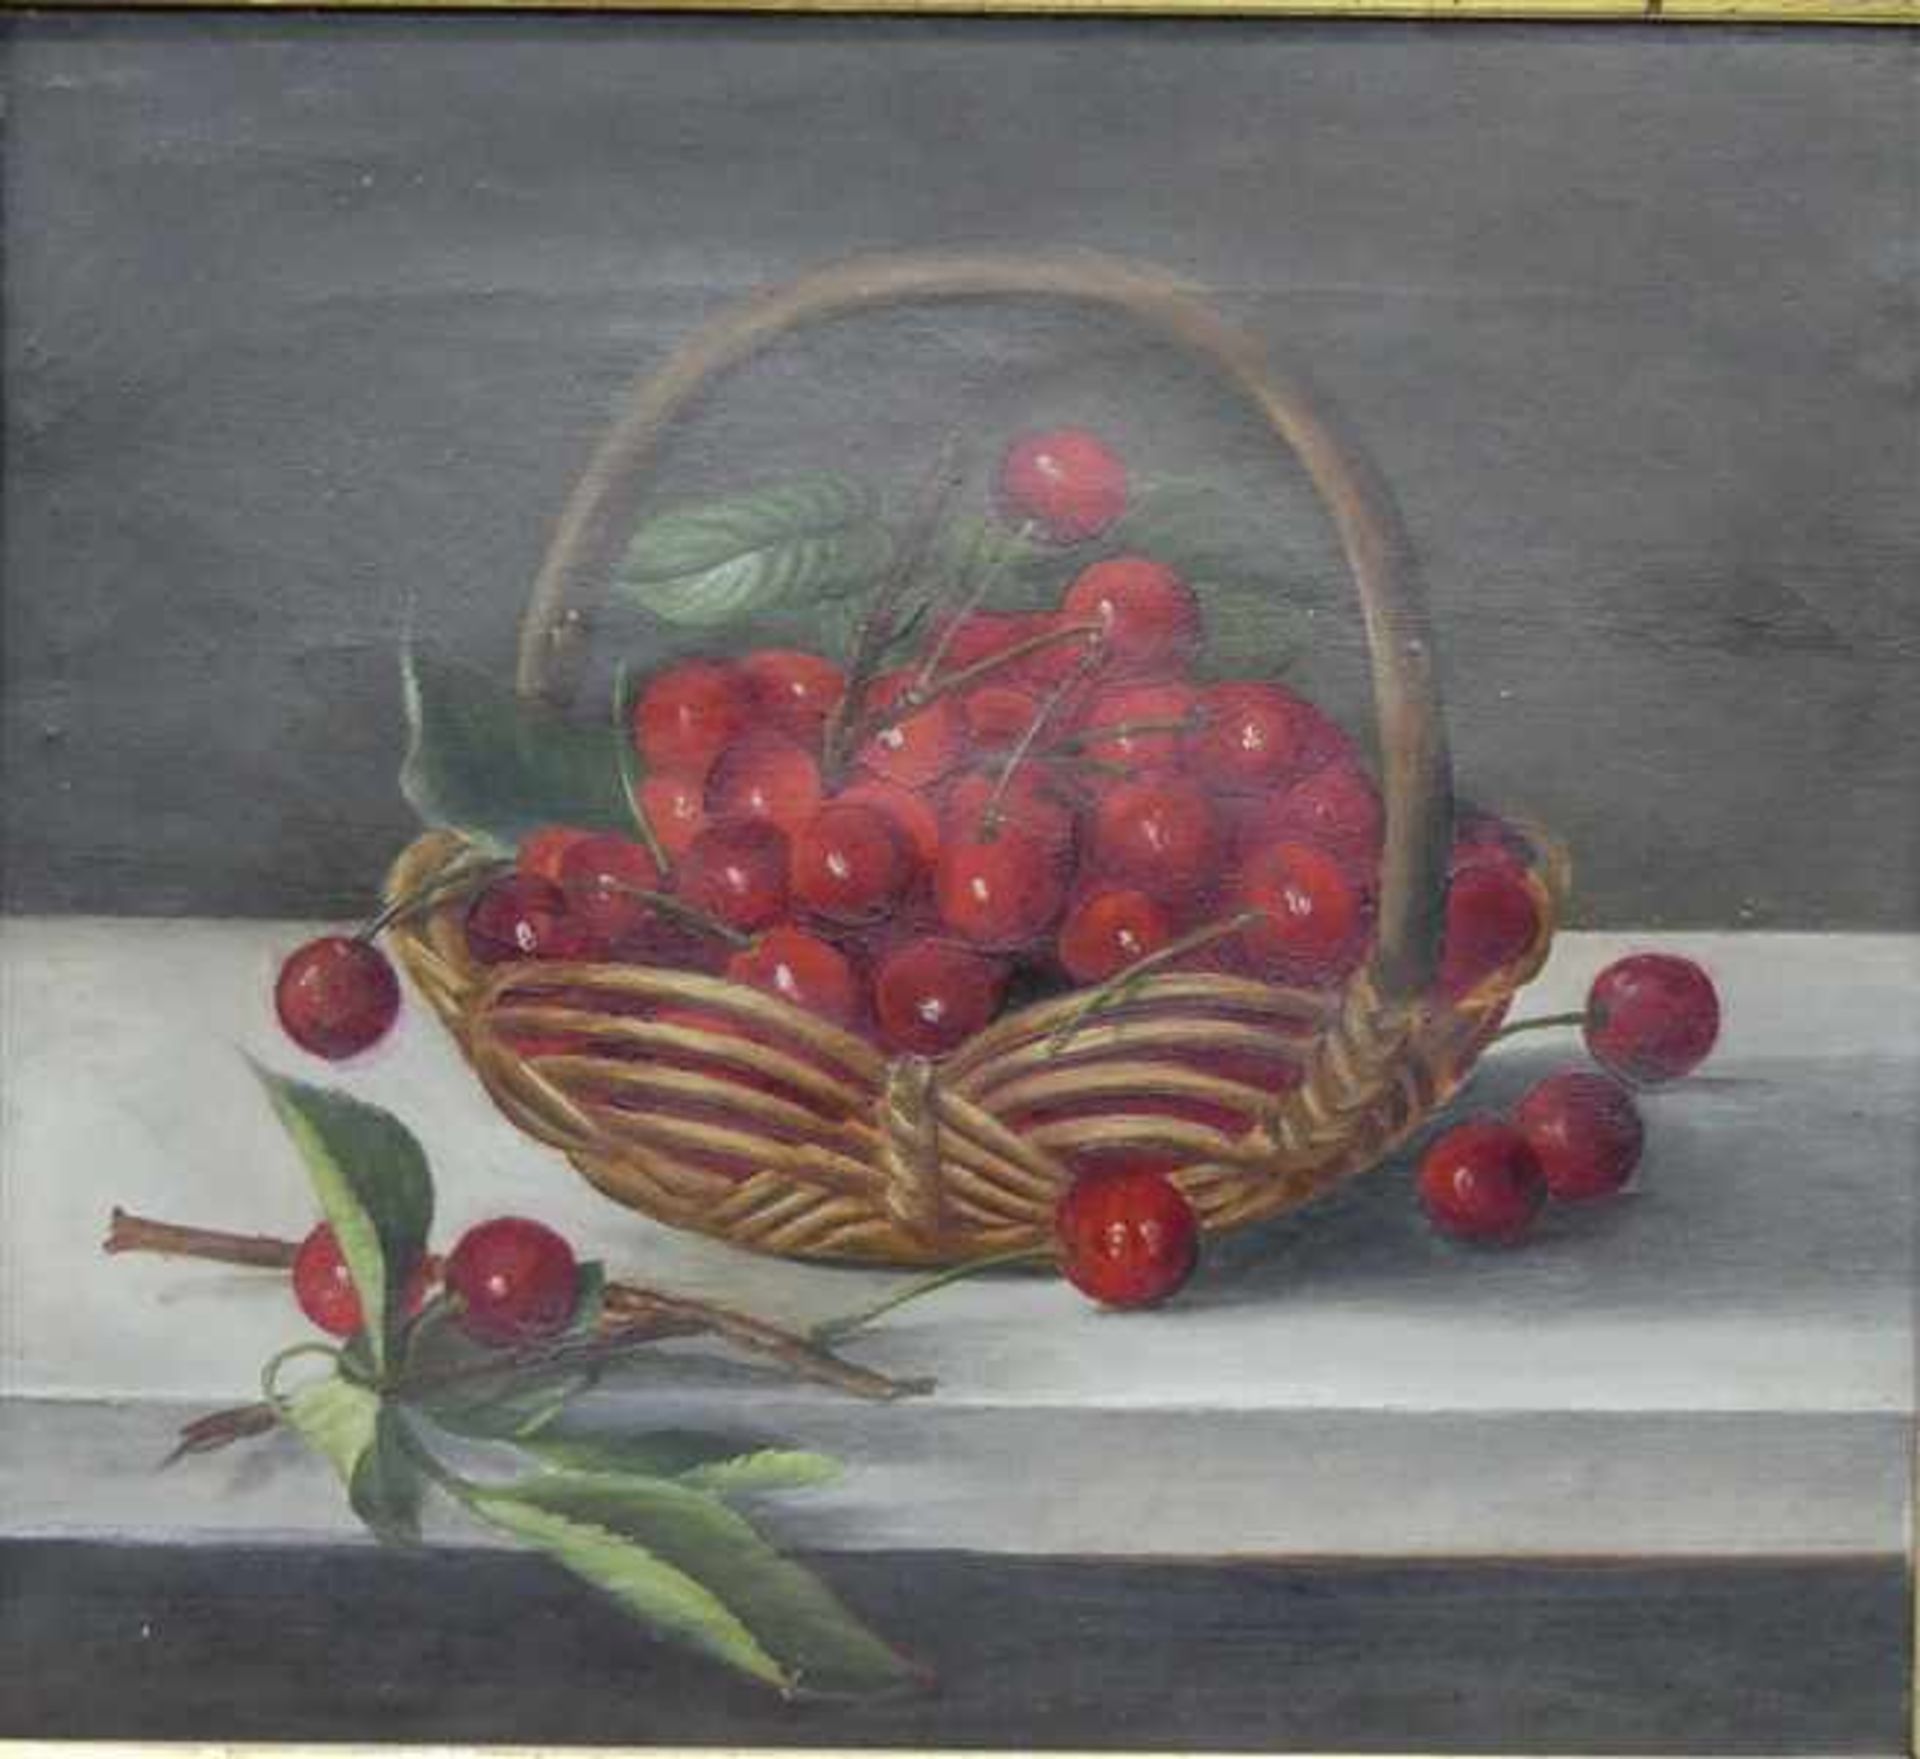 Stillebenmalerei, 19. Jh.Öl auf Leinen, Obststilleben von Kirschen im Korb, 27x31 cm, im